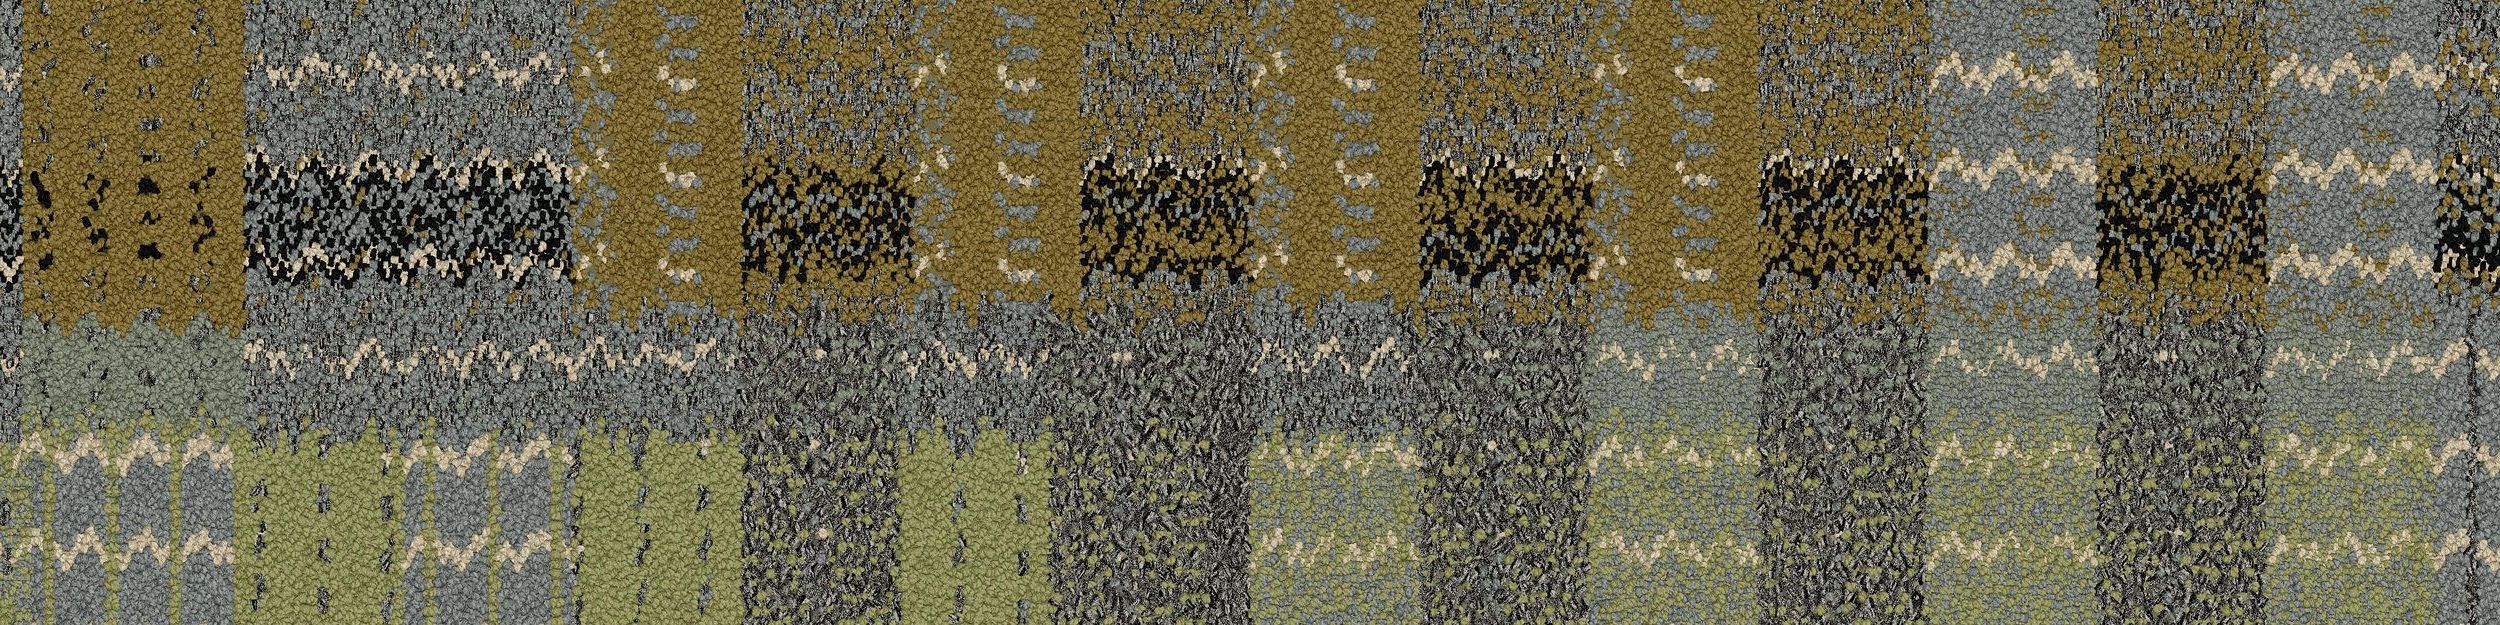 Social Fabric Carpet Tile In Meadow numéro d’image 2